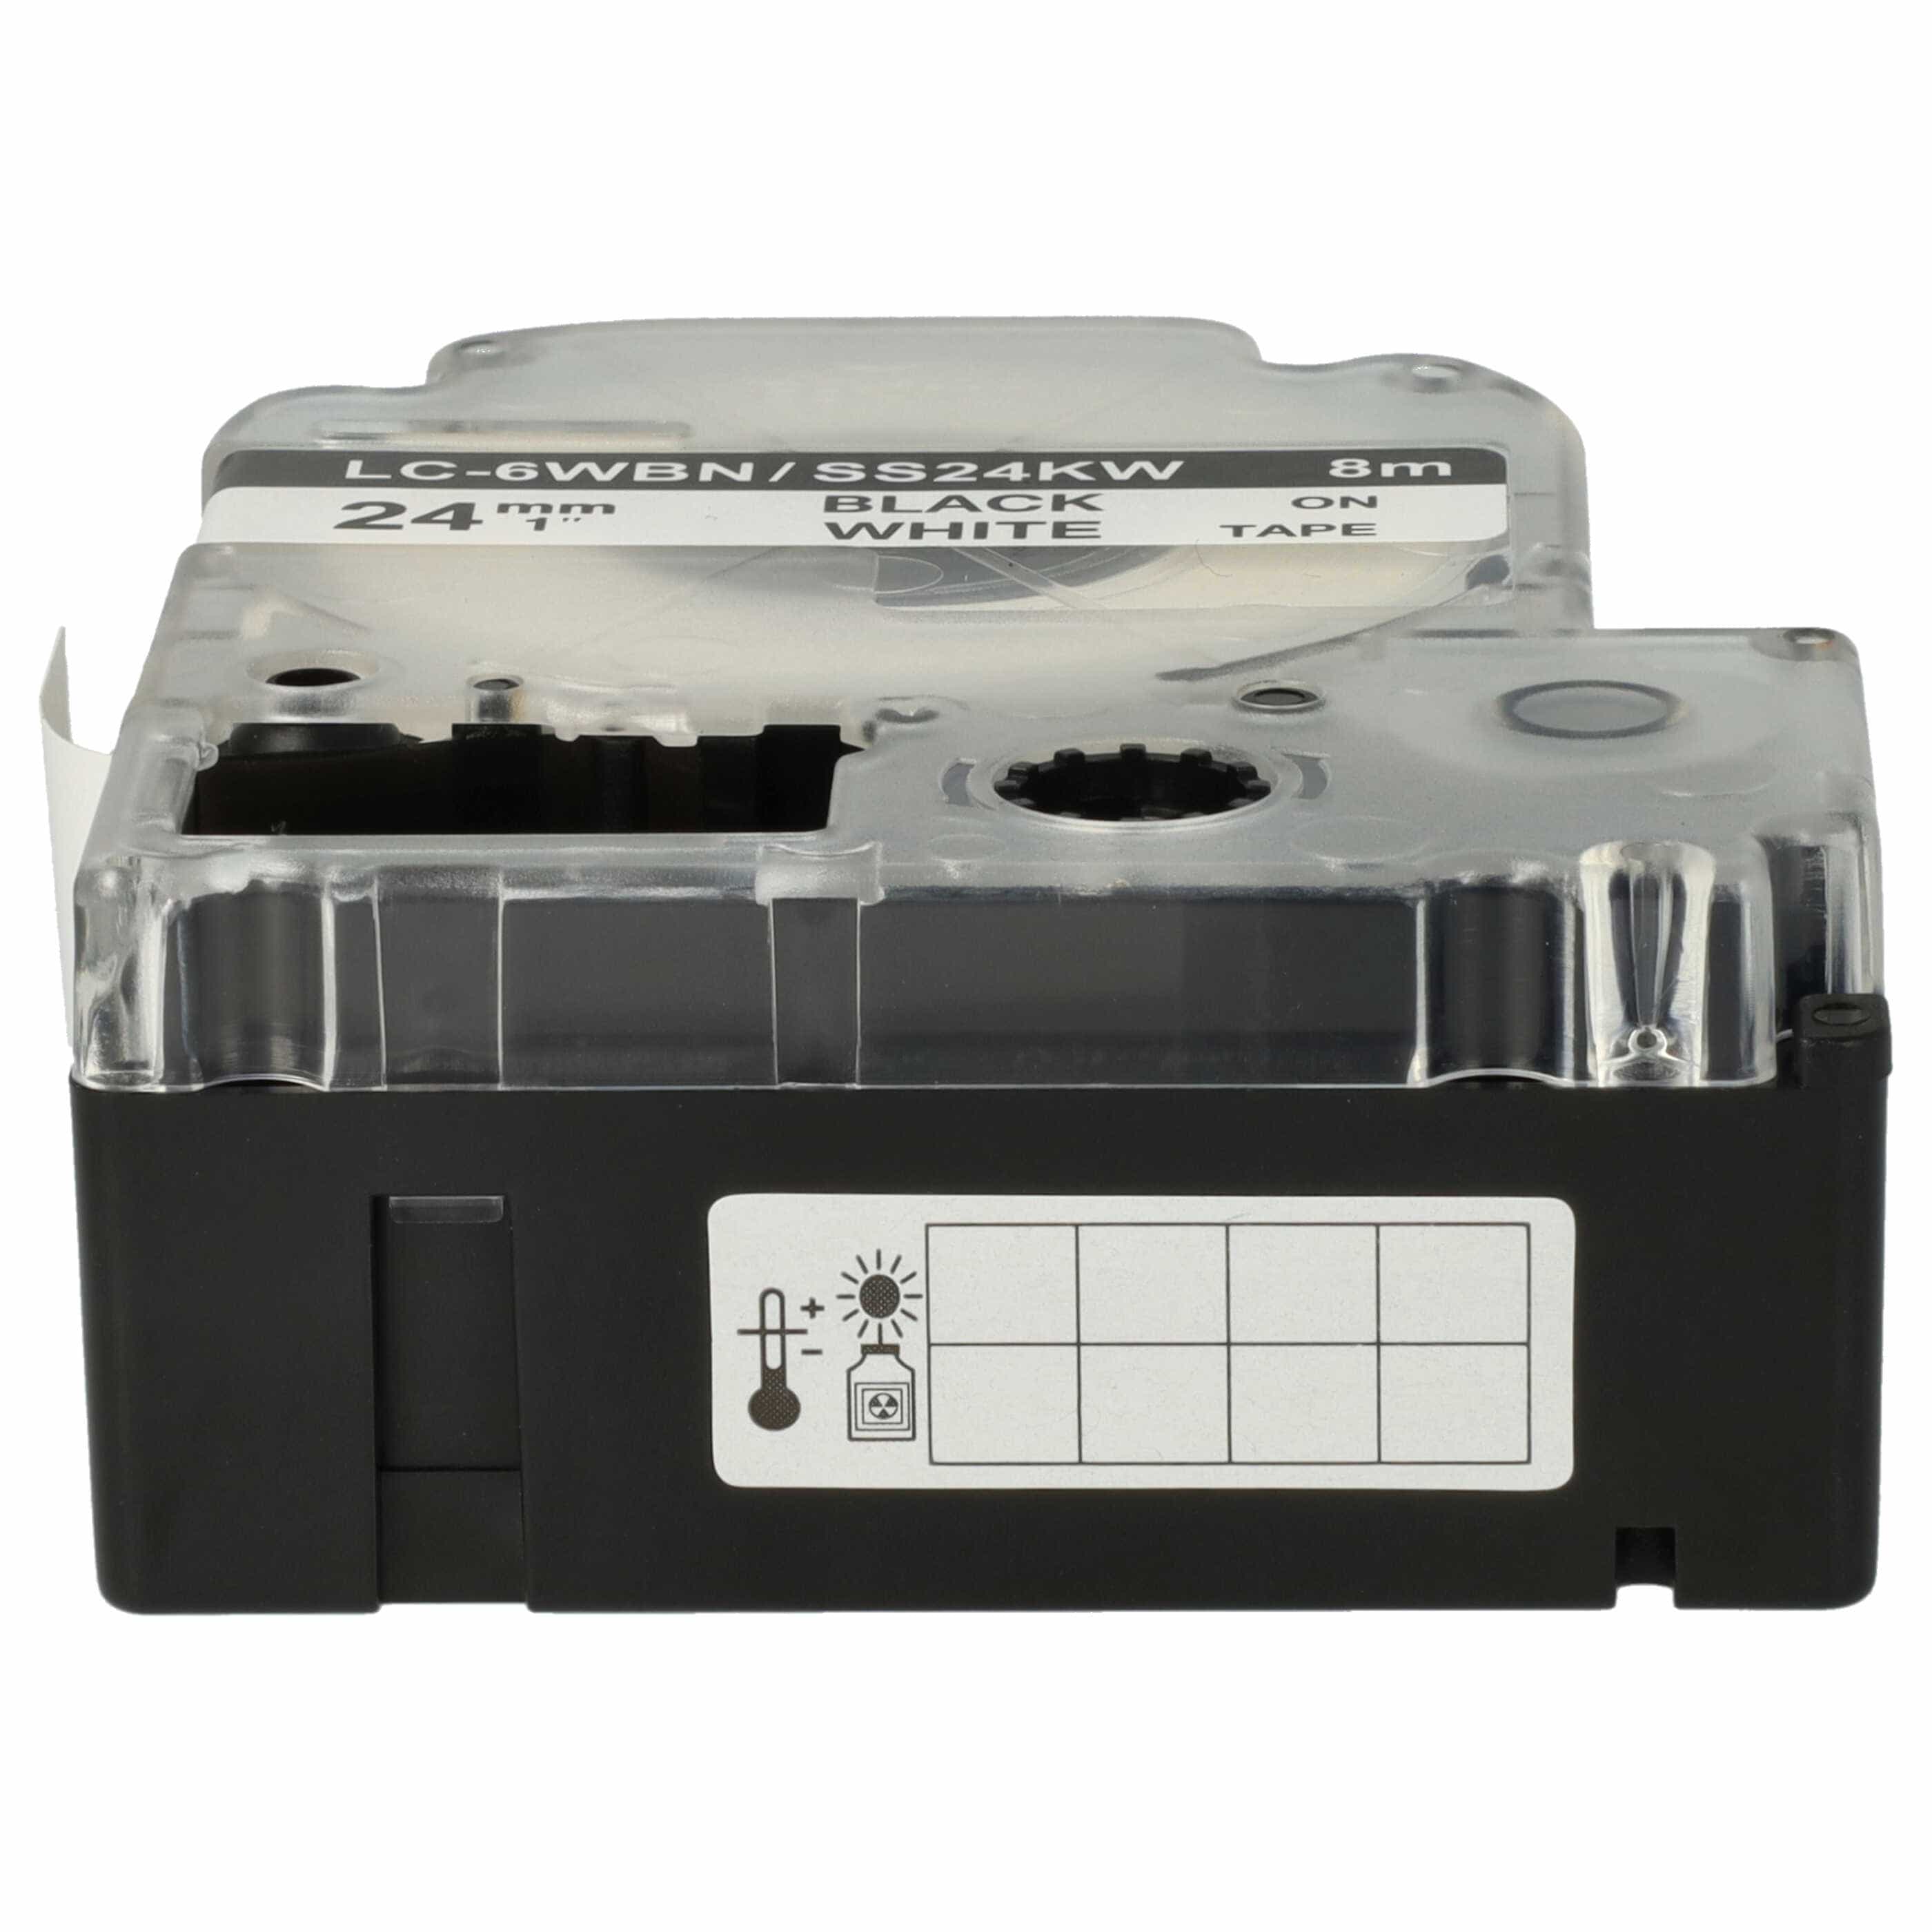 Schriftband als Ersatz für Epson LC-6WBN - 24mm Schwarz auf Weiß